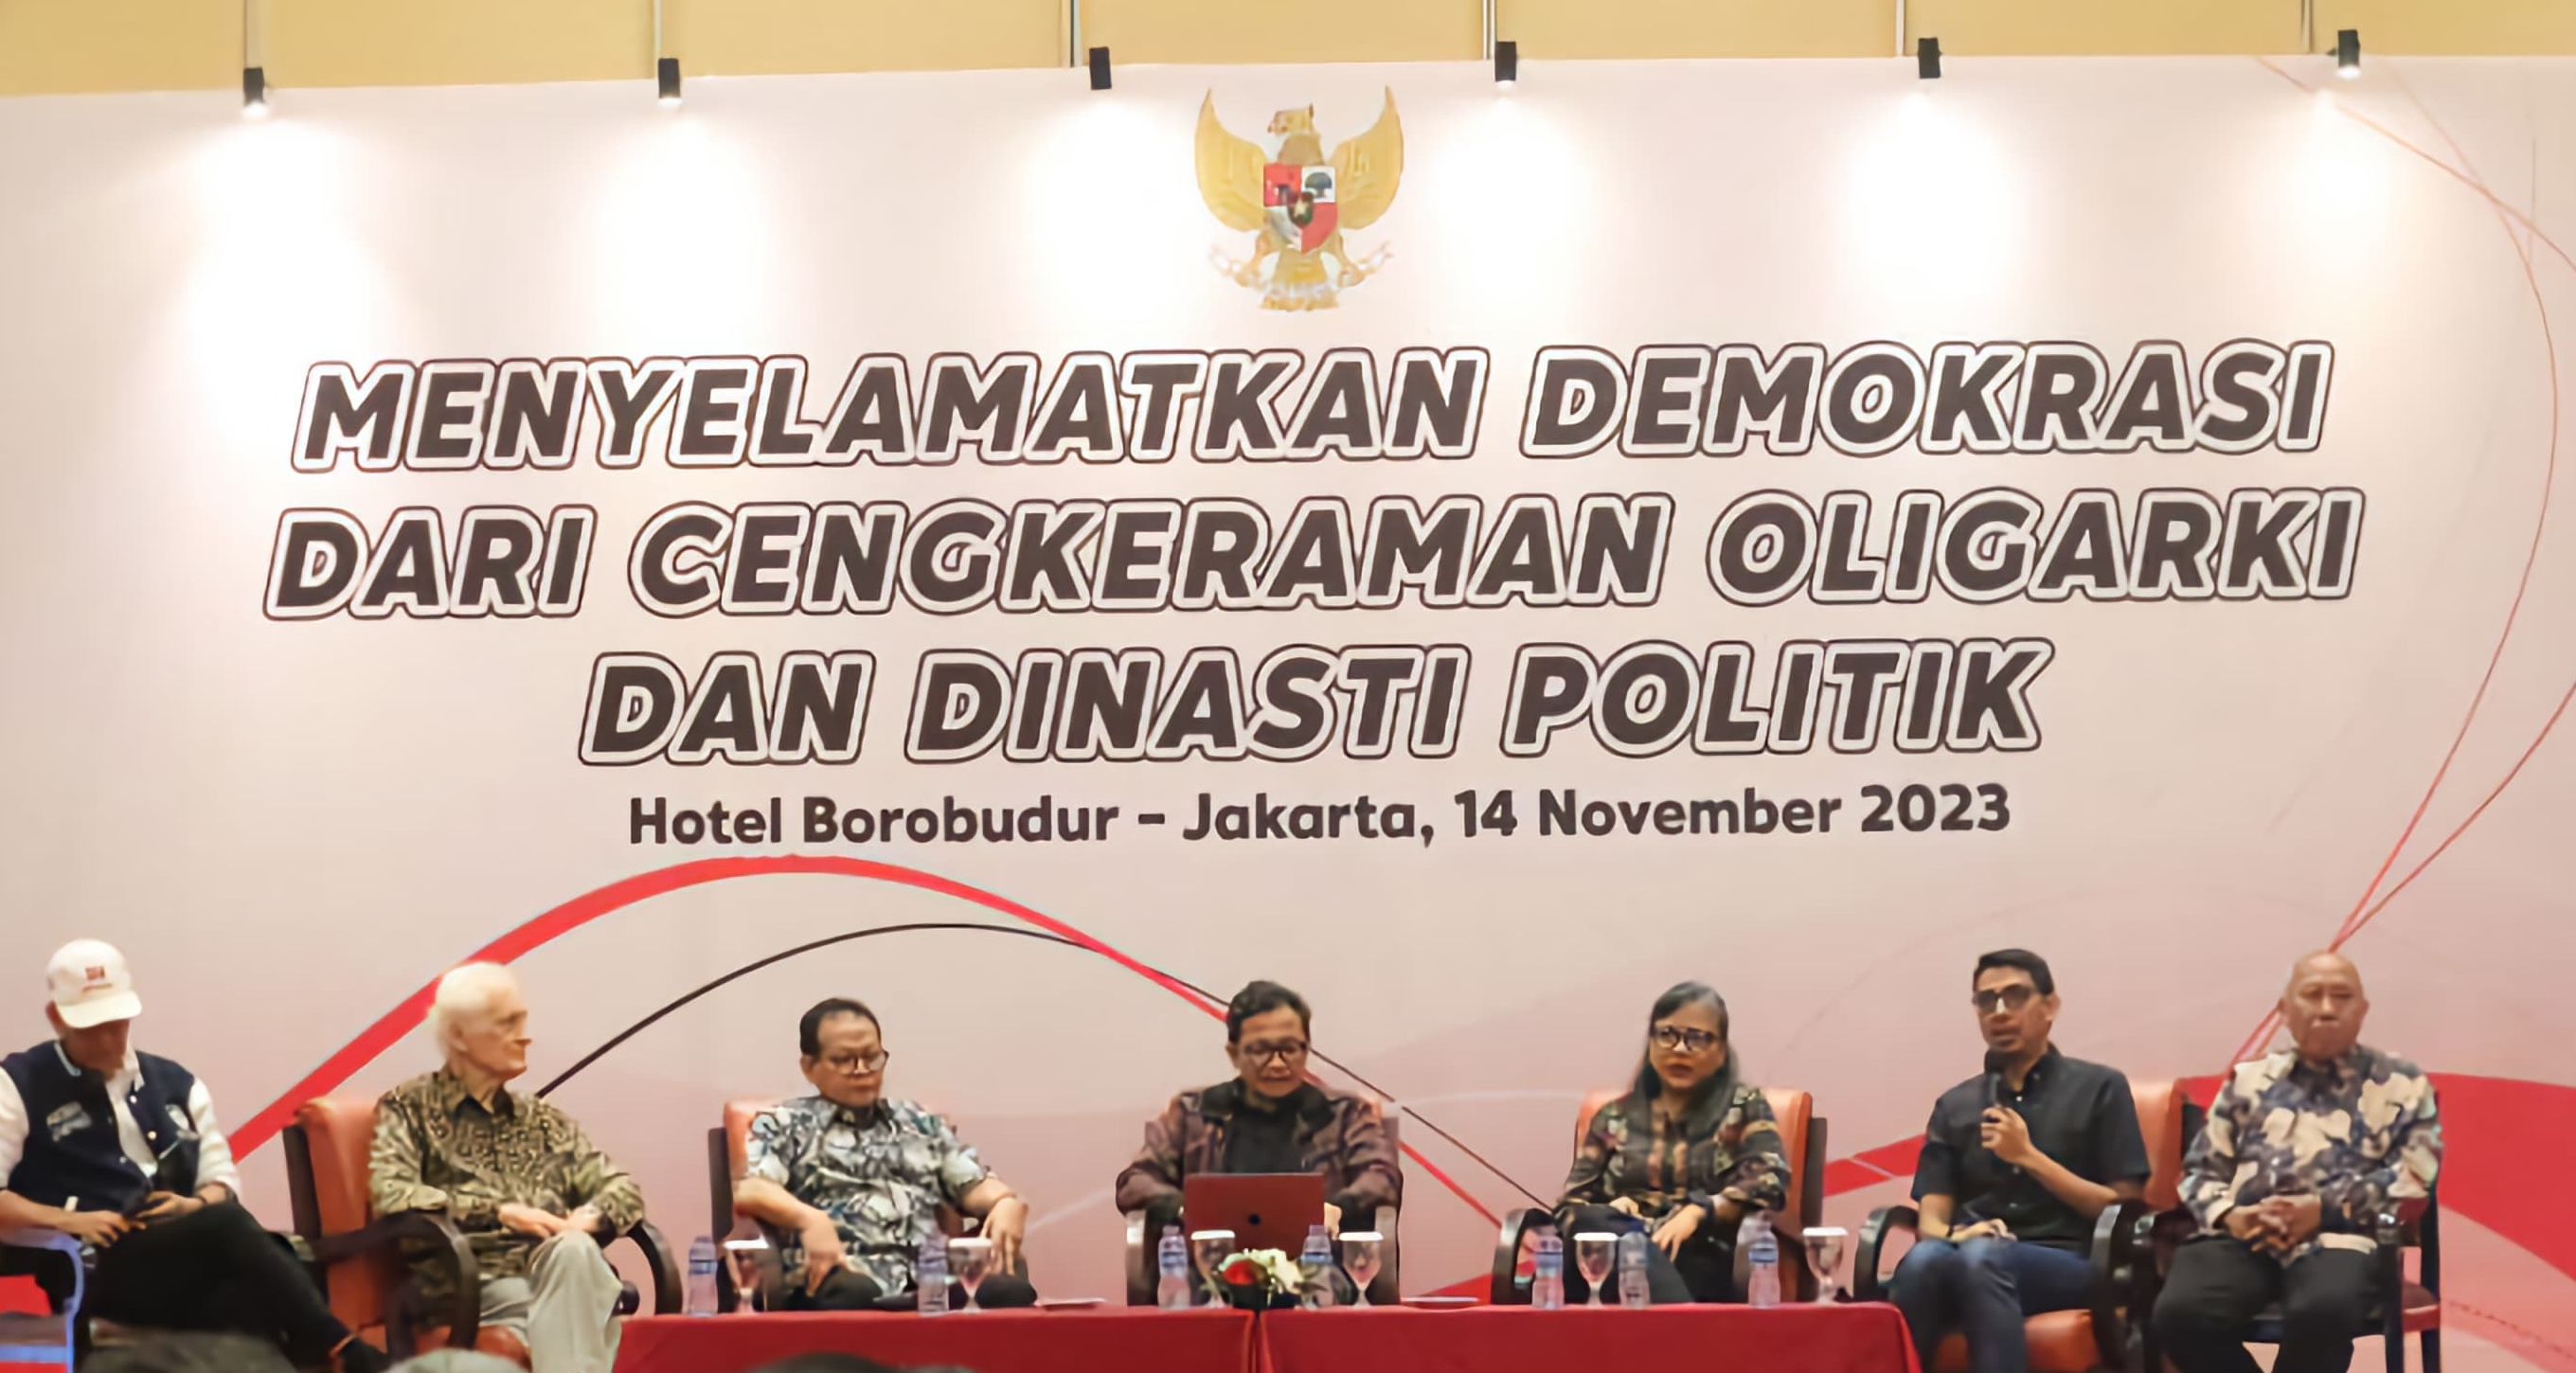 Diskusi bertajuk Menyelamatkan Demokrasi dari Cengkeraman Oligarki dan Dinasti Politik di Hotel Borobudur, Jakarta pada Selasa 14 November 2023.